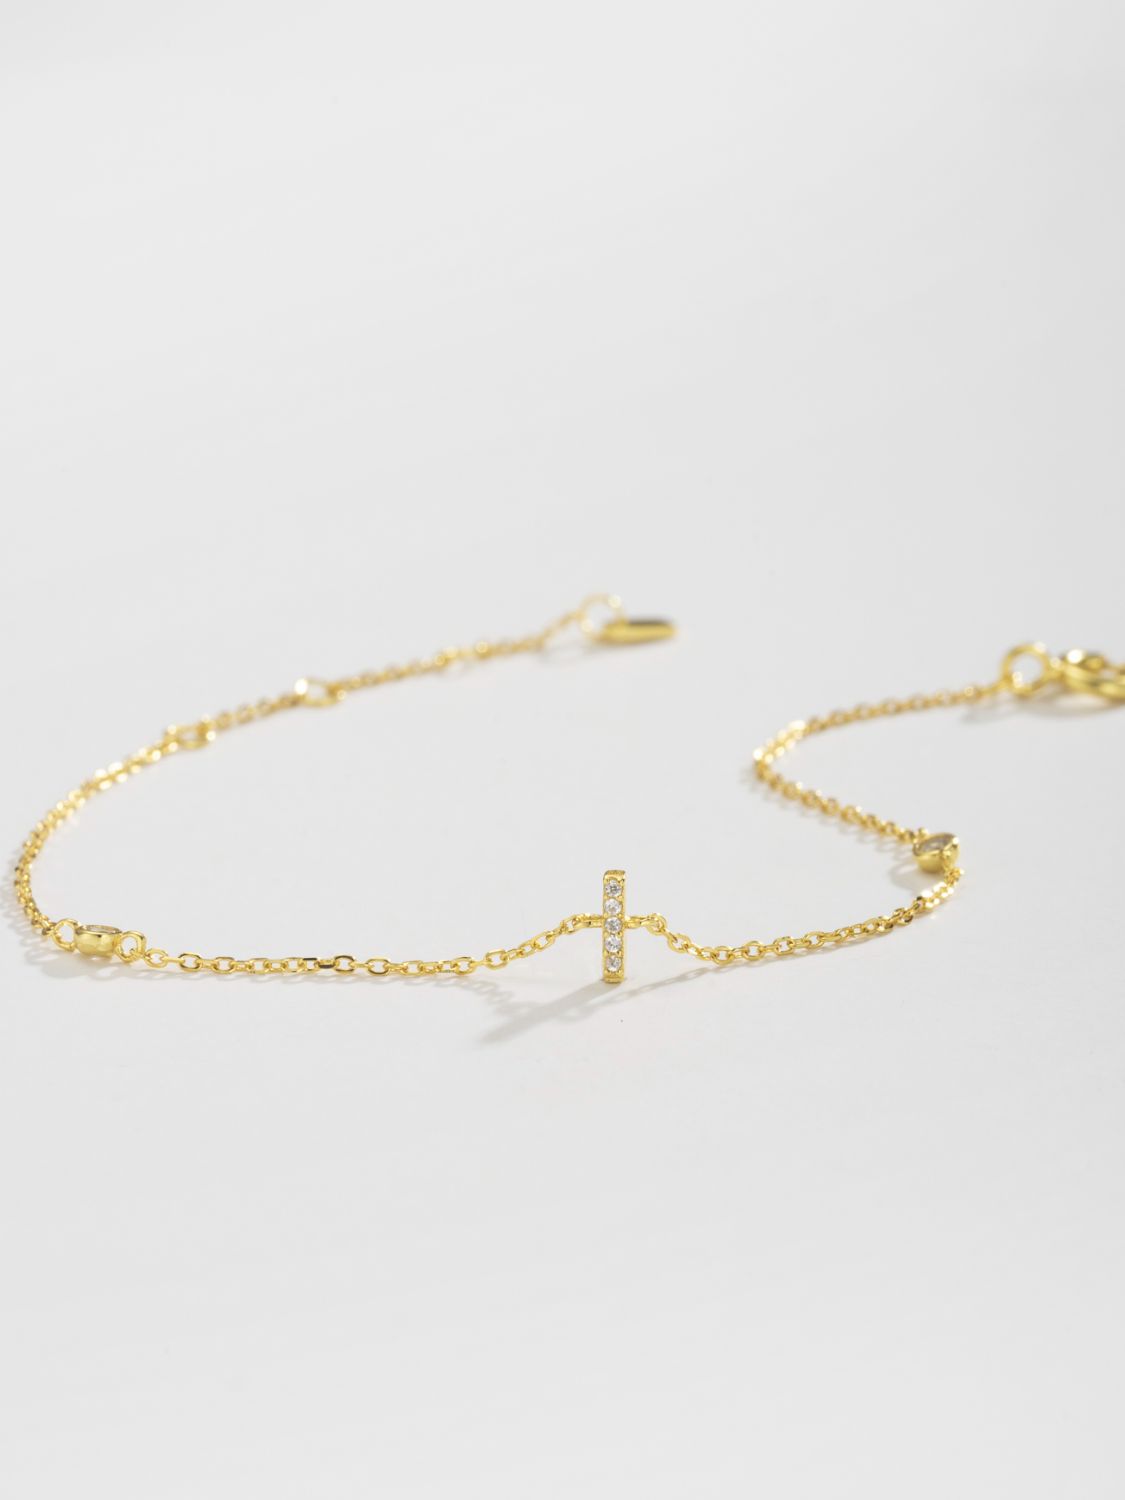 Zircon 925 Sterling Silver Bracelet - Women’s Jewelry - Bracelets - 15 - 2024